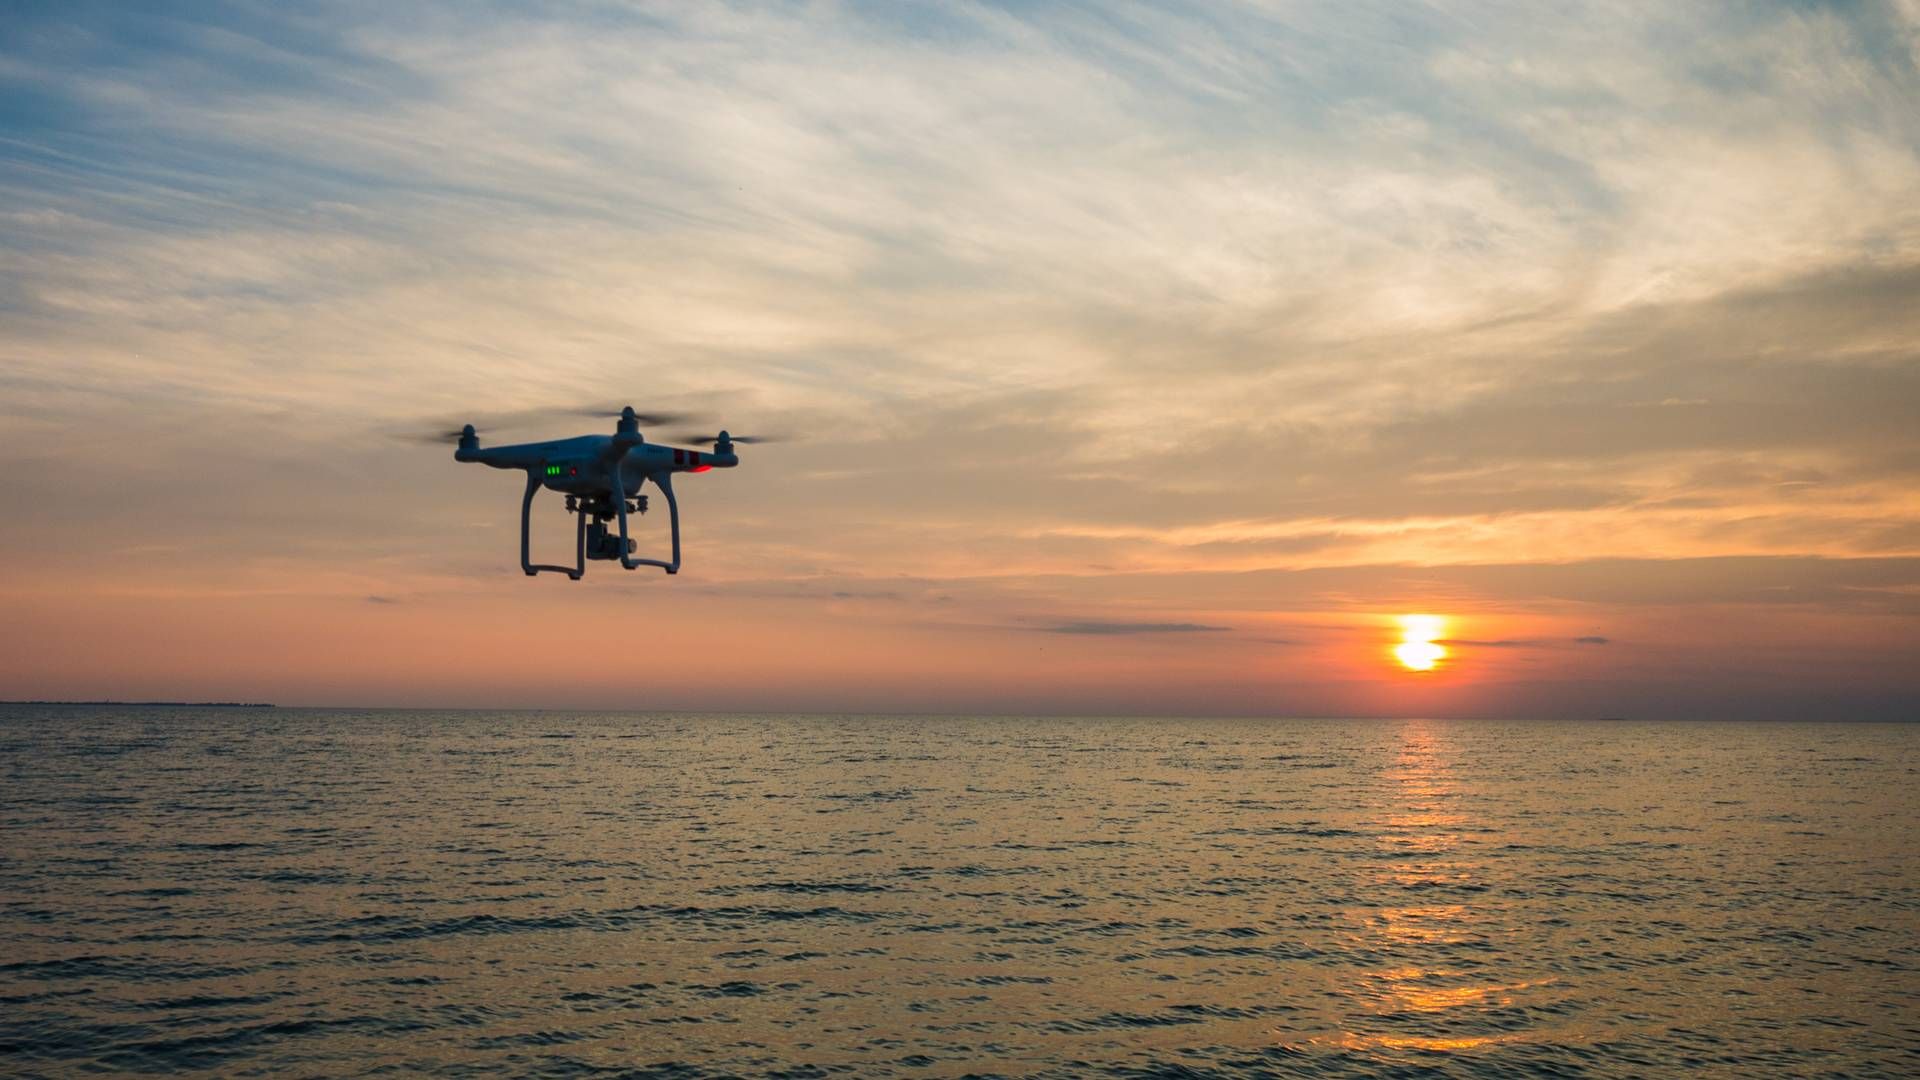 Der bliver solgt omkring 20.000 droner årligt, og forhandlerne har ifølge Trafikstyrelsen et særligt ansvar for, at deres produkter lever op til reglerne. | Foto: Energy Cluster Denmark